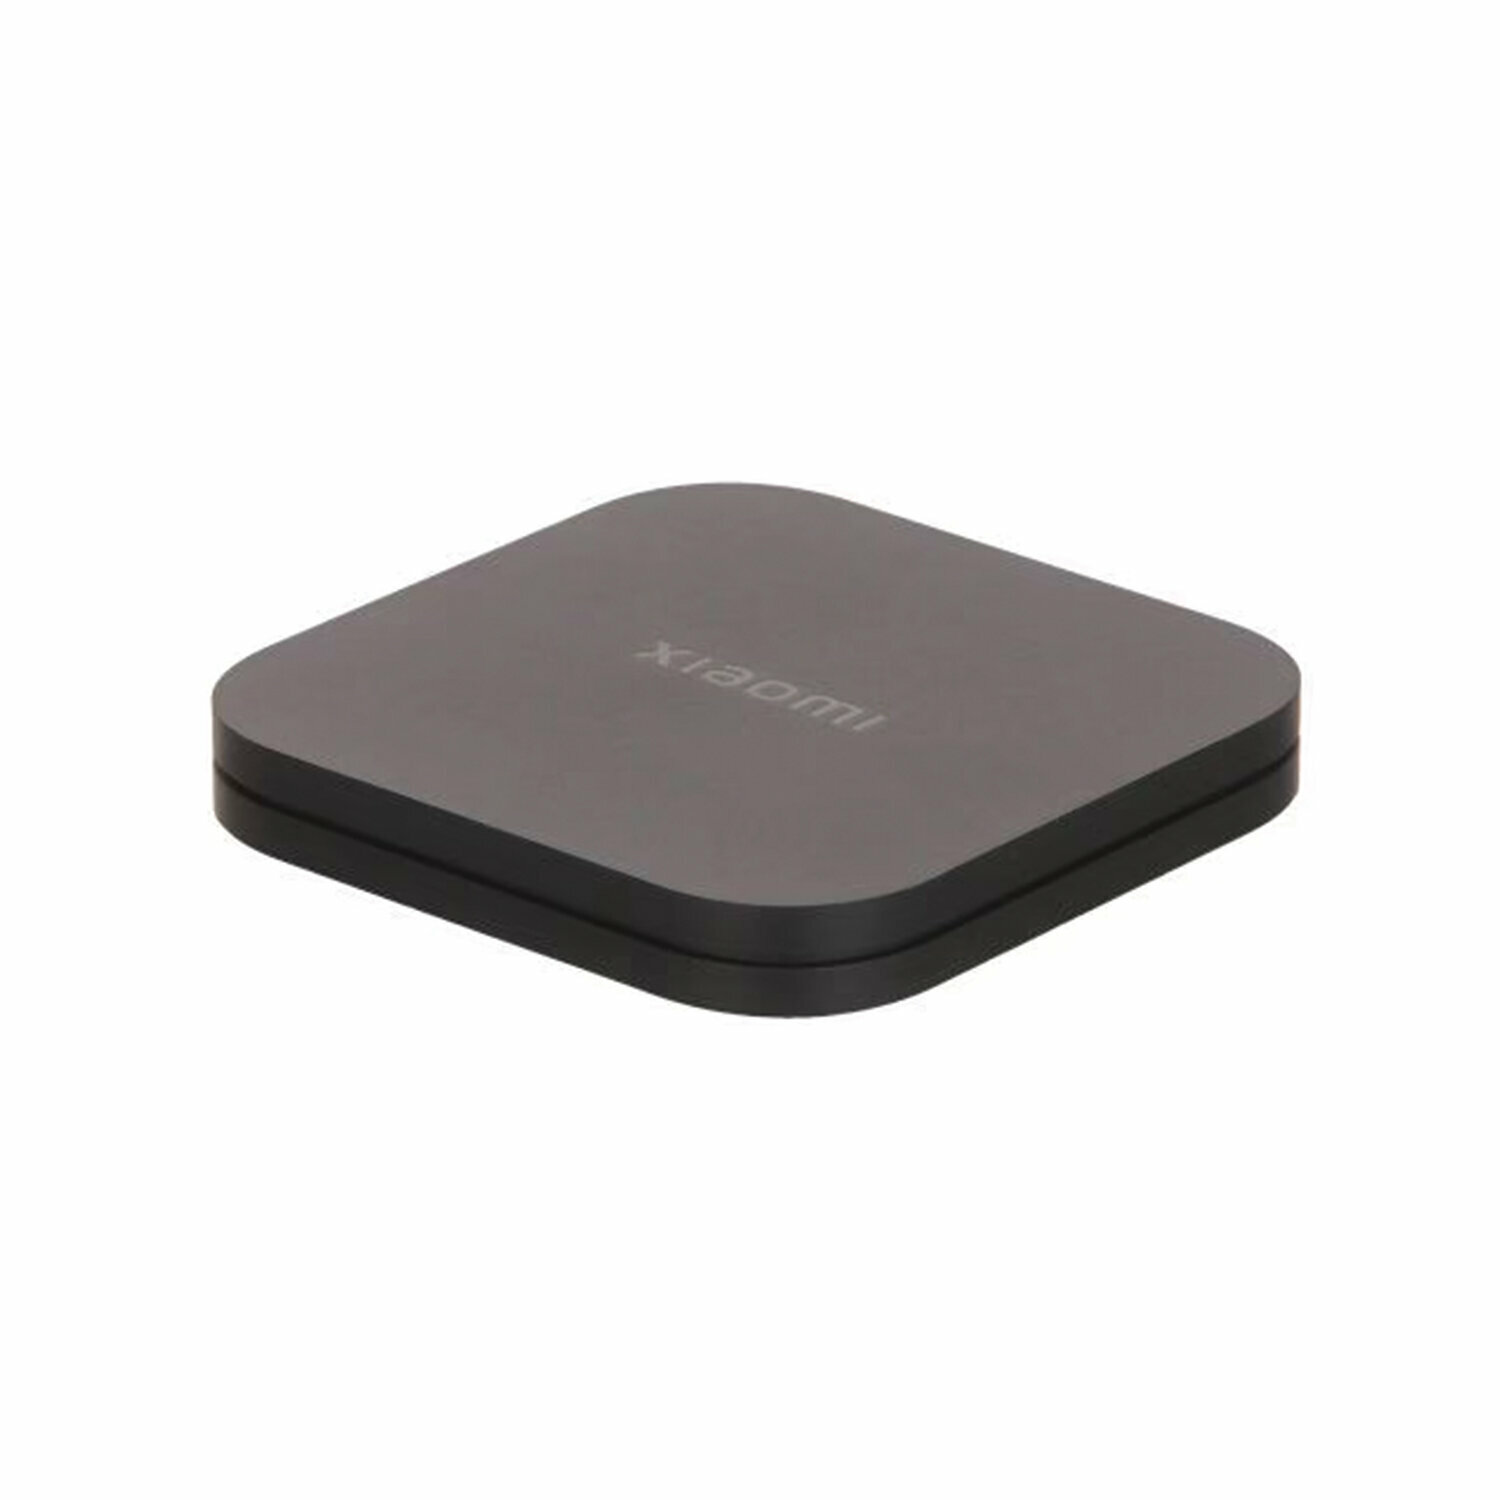 Приставка Смарт-ТВ XIAOMI Mi Box S 2nd Gen, Google TV, 4 ядра, 2 Gb+8 Gb, HDMI, Wi-Fi, пульт ДУ, черный /Квант продажи 1 ед./